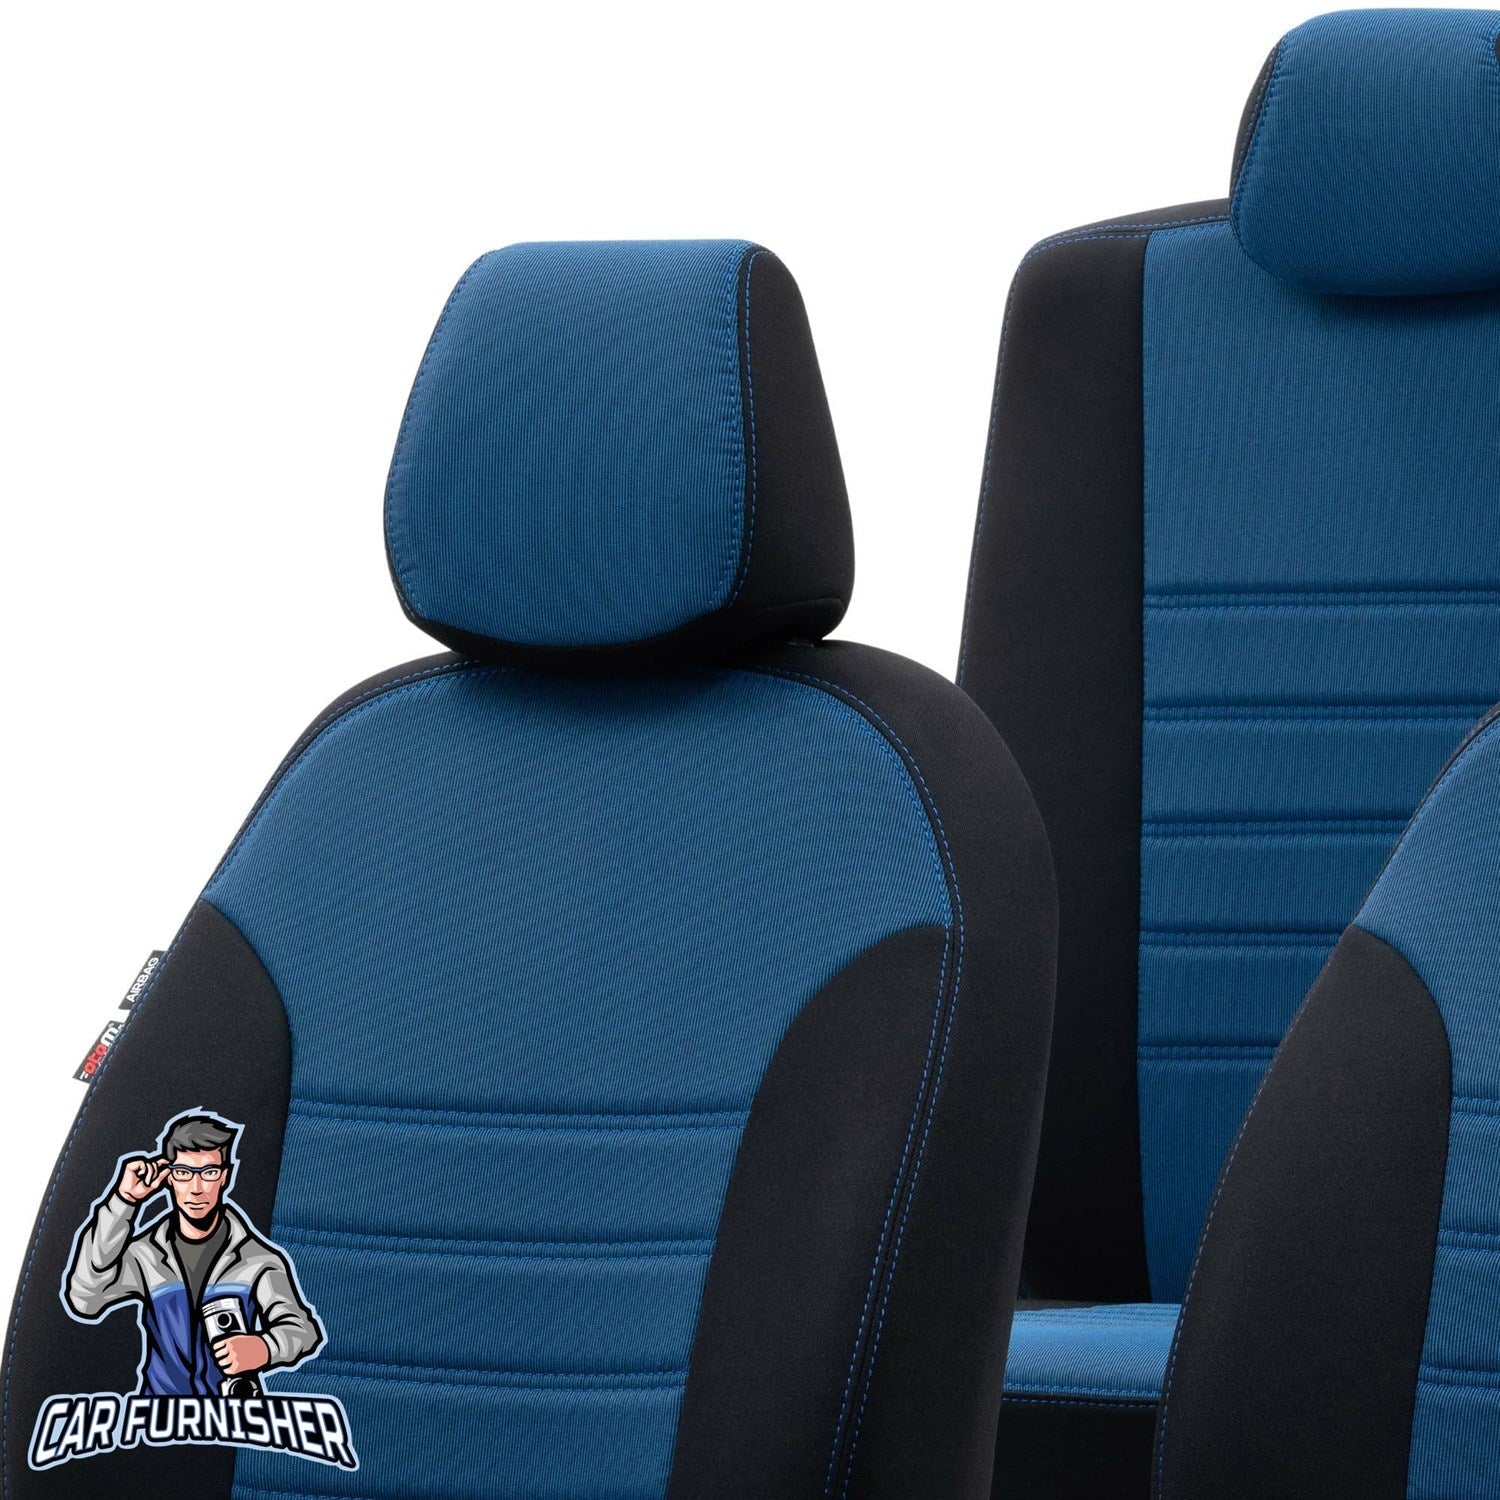 Volvo S80 Seat Cover Original Jacquard Design Dark Beige Jacquard Fabric